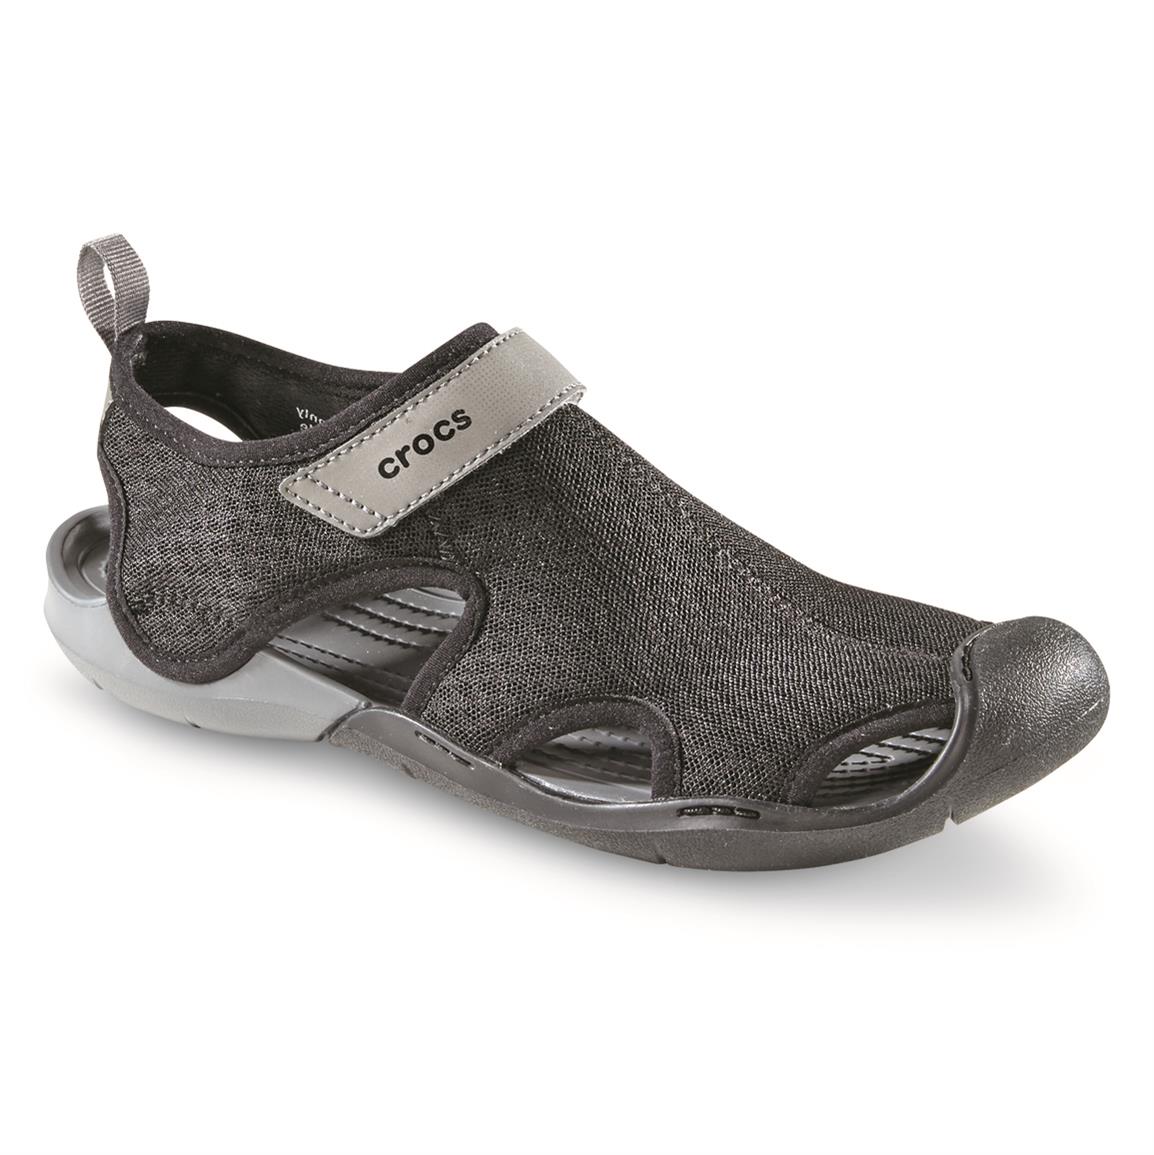  Crocs  Women s  Swiftwater Mesh Sandals  676208 Sandals  